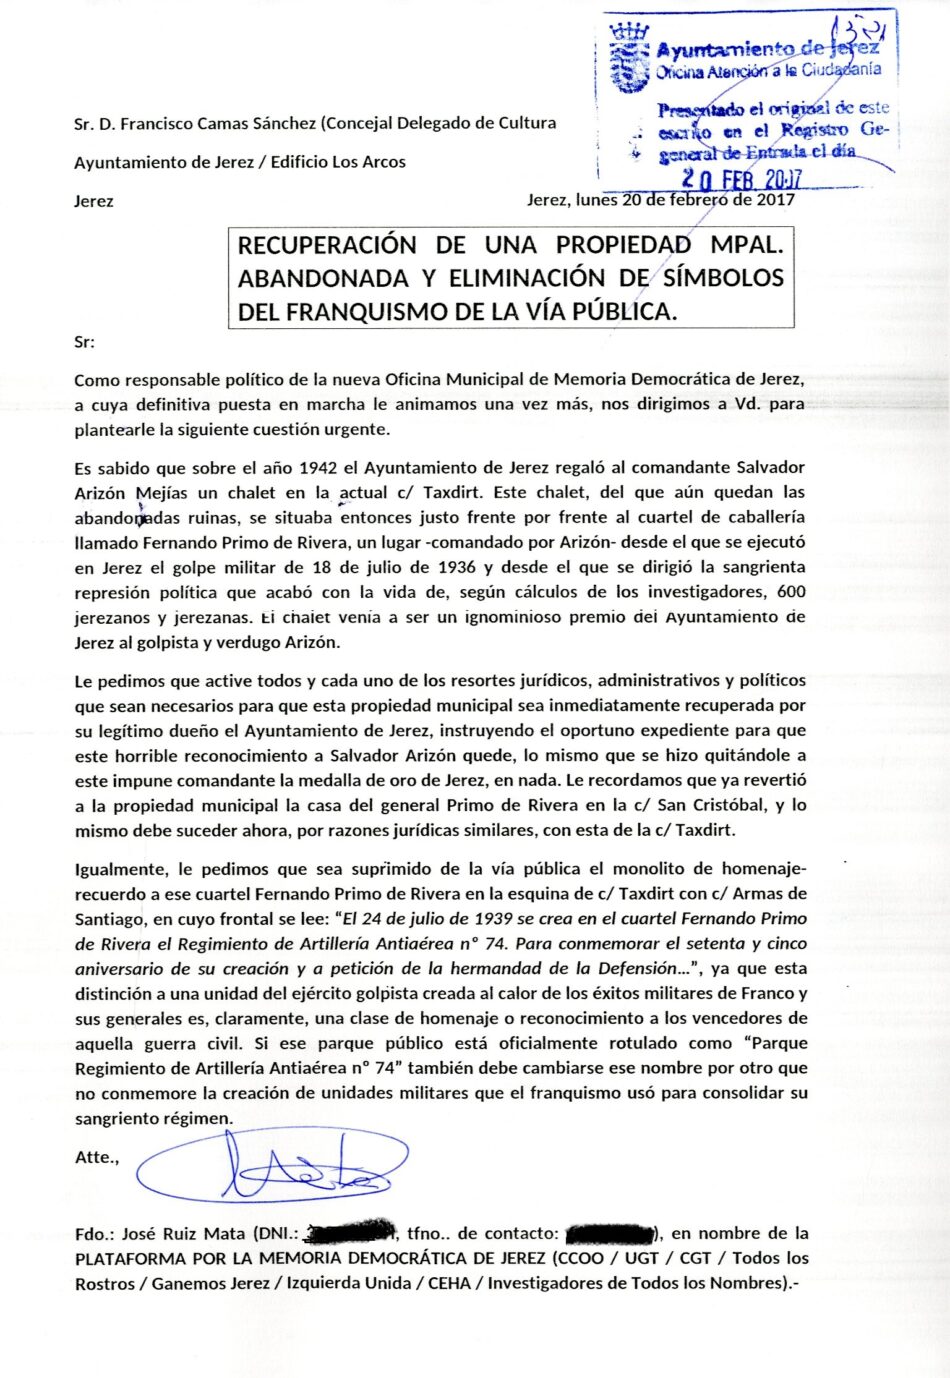 Carta de la Plataforma por la Memoria Democrática de Jerez al Ayuntamiento de ese municipio en relación con los símbolos franquistas en la vía pública